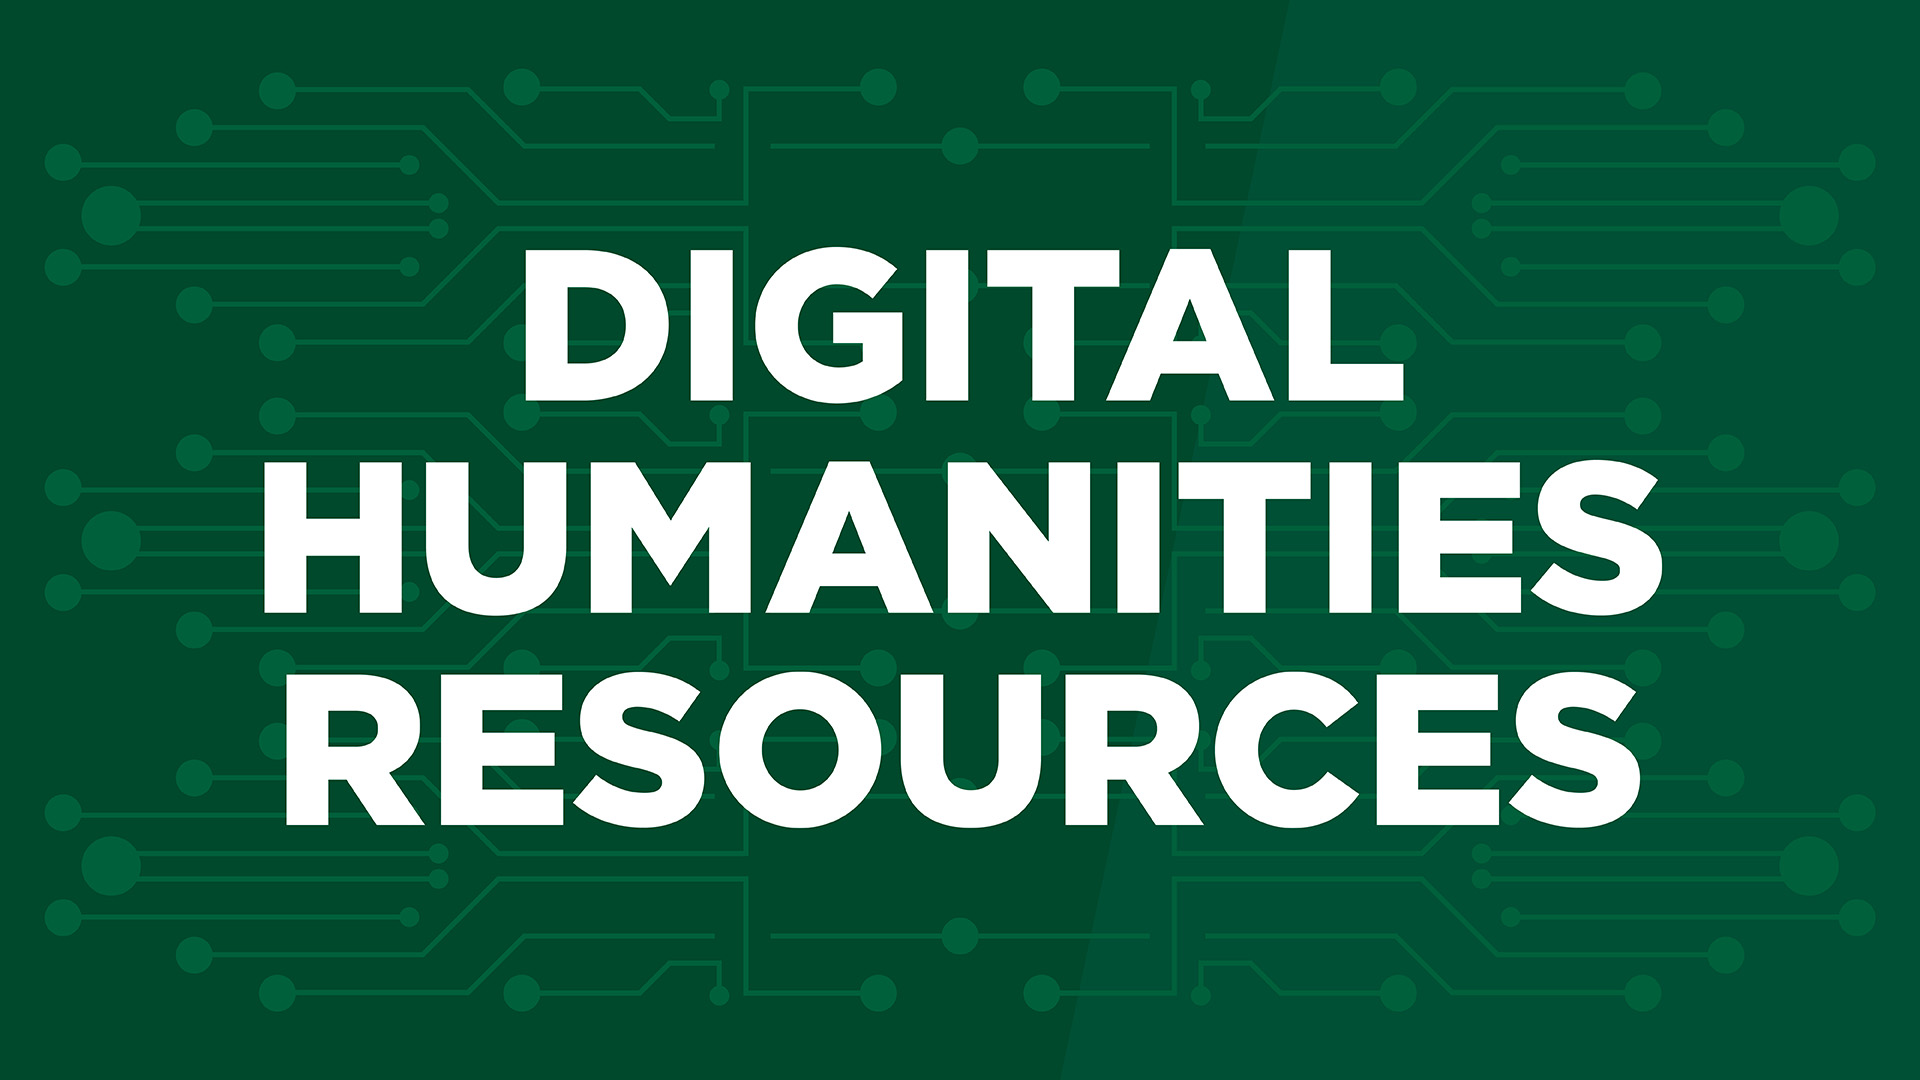 Digital Humanities Resources